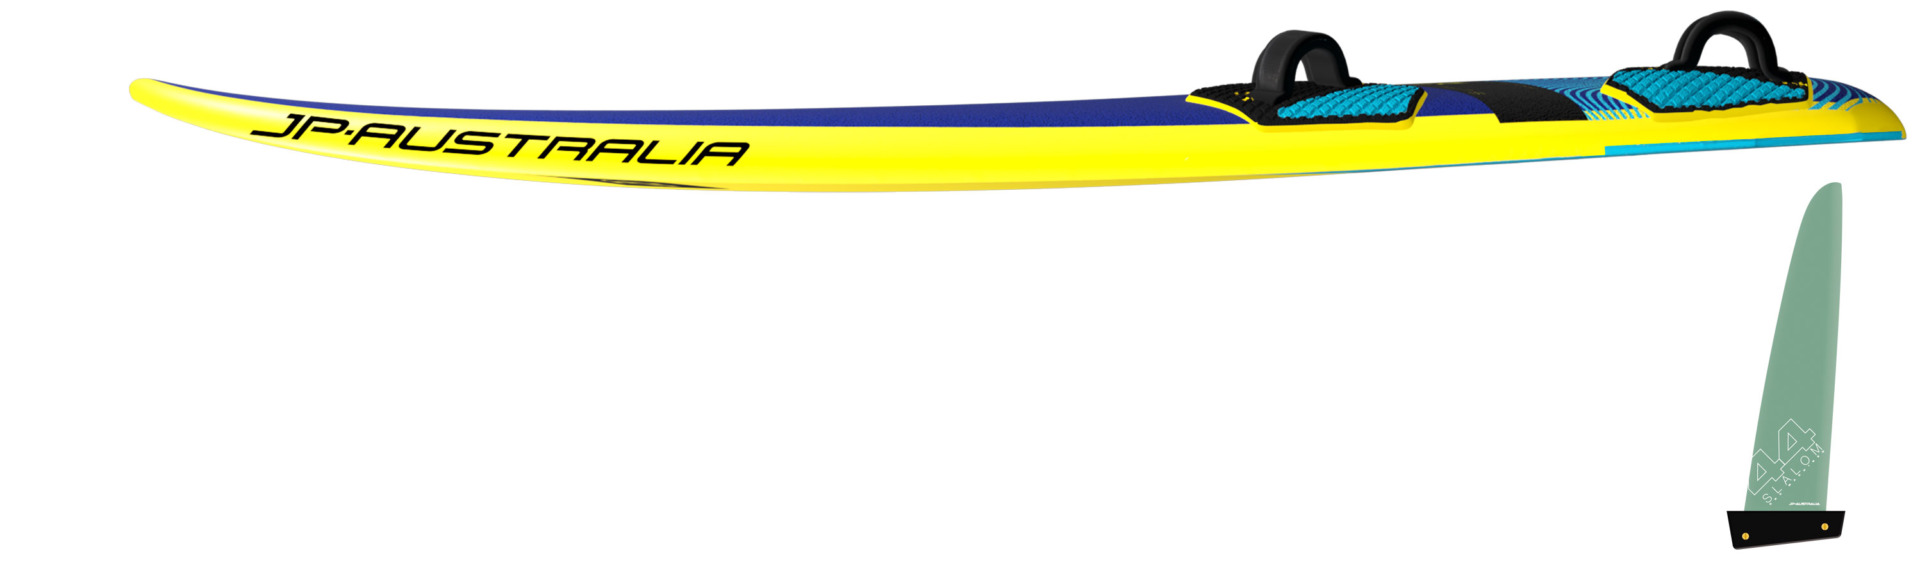 LXT super sport rails windsurfing karlin